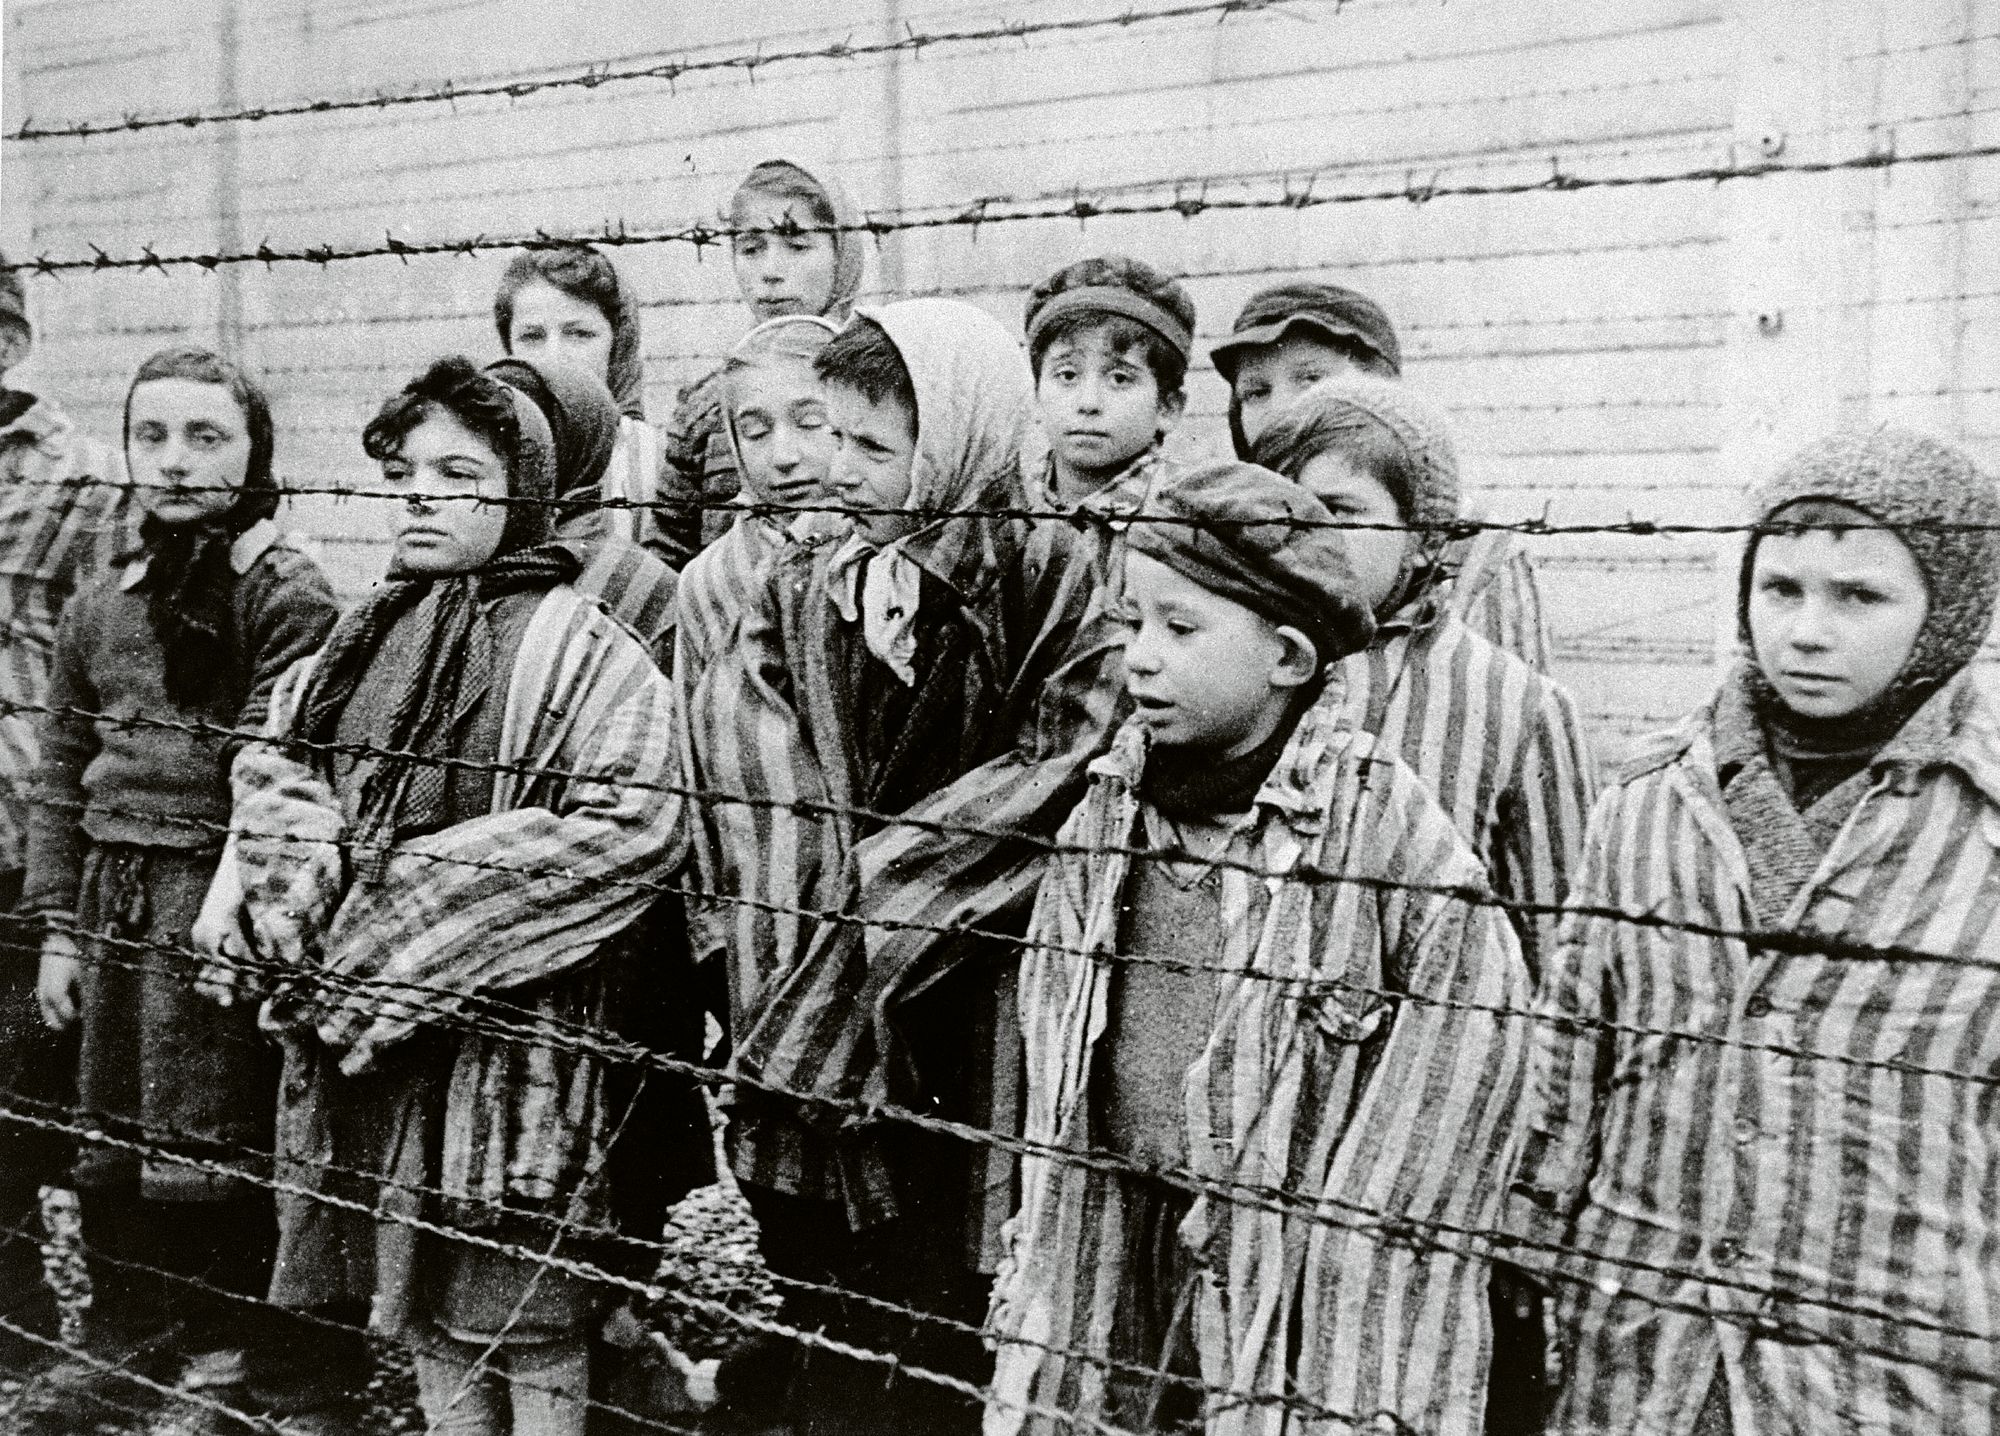 Kohti Berliiniä etenevät Neuvostoliiton joukot vapauttivat Auschwitzin vangit tammikuussa 1945. Kuvassa näkyy aidan takana naisten lisäksi lapsia aikuisten vankien asuissa. © Universal Images Group / Lehtikuva